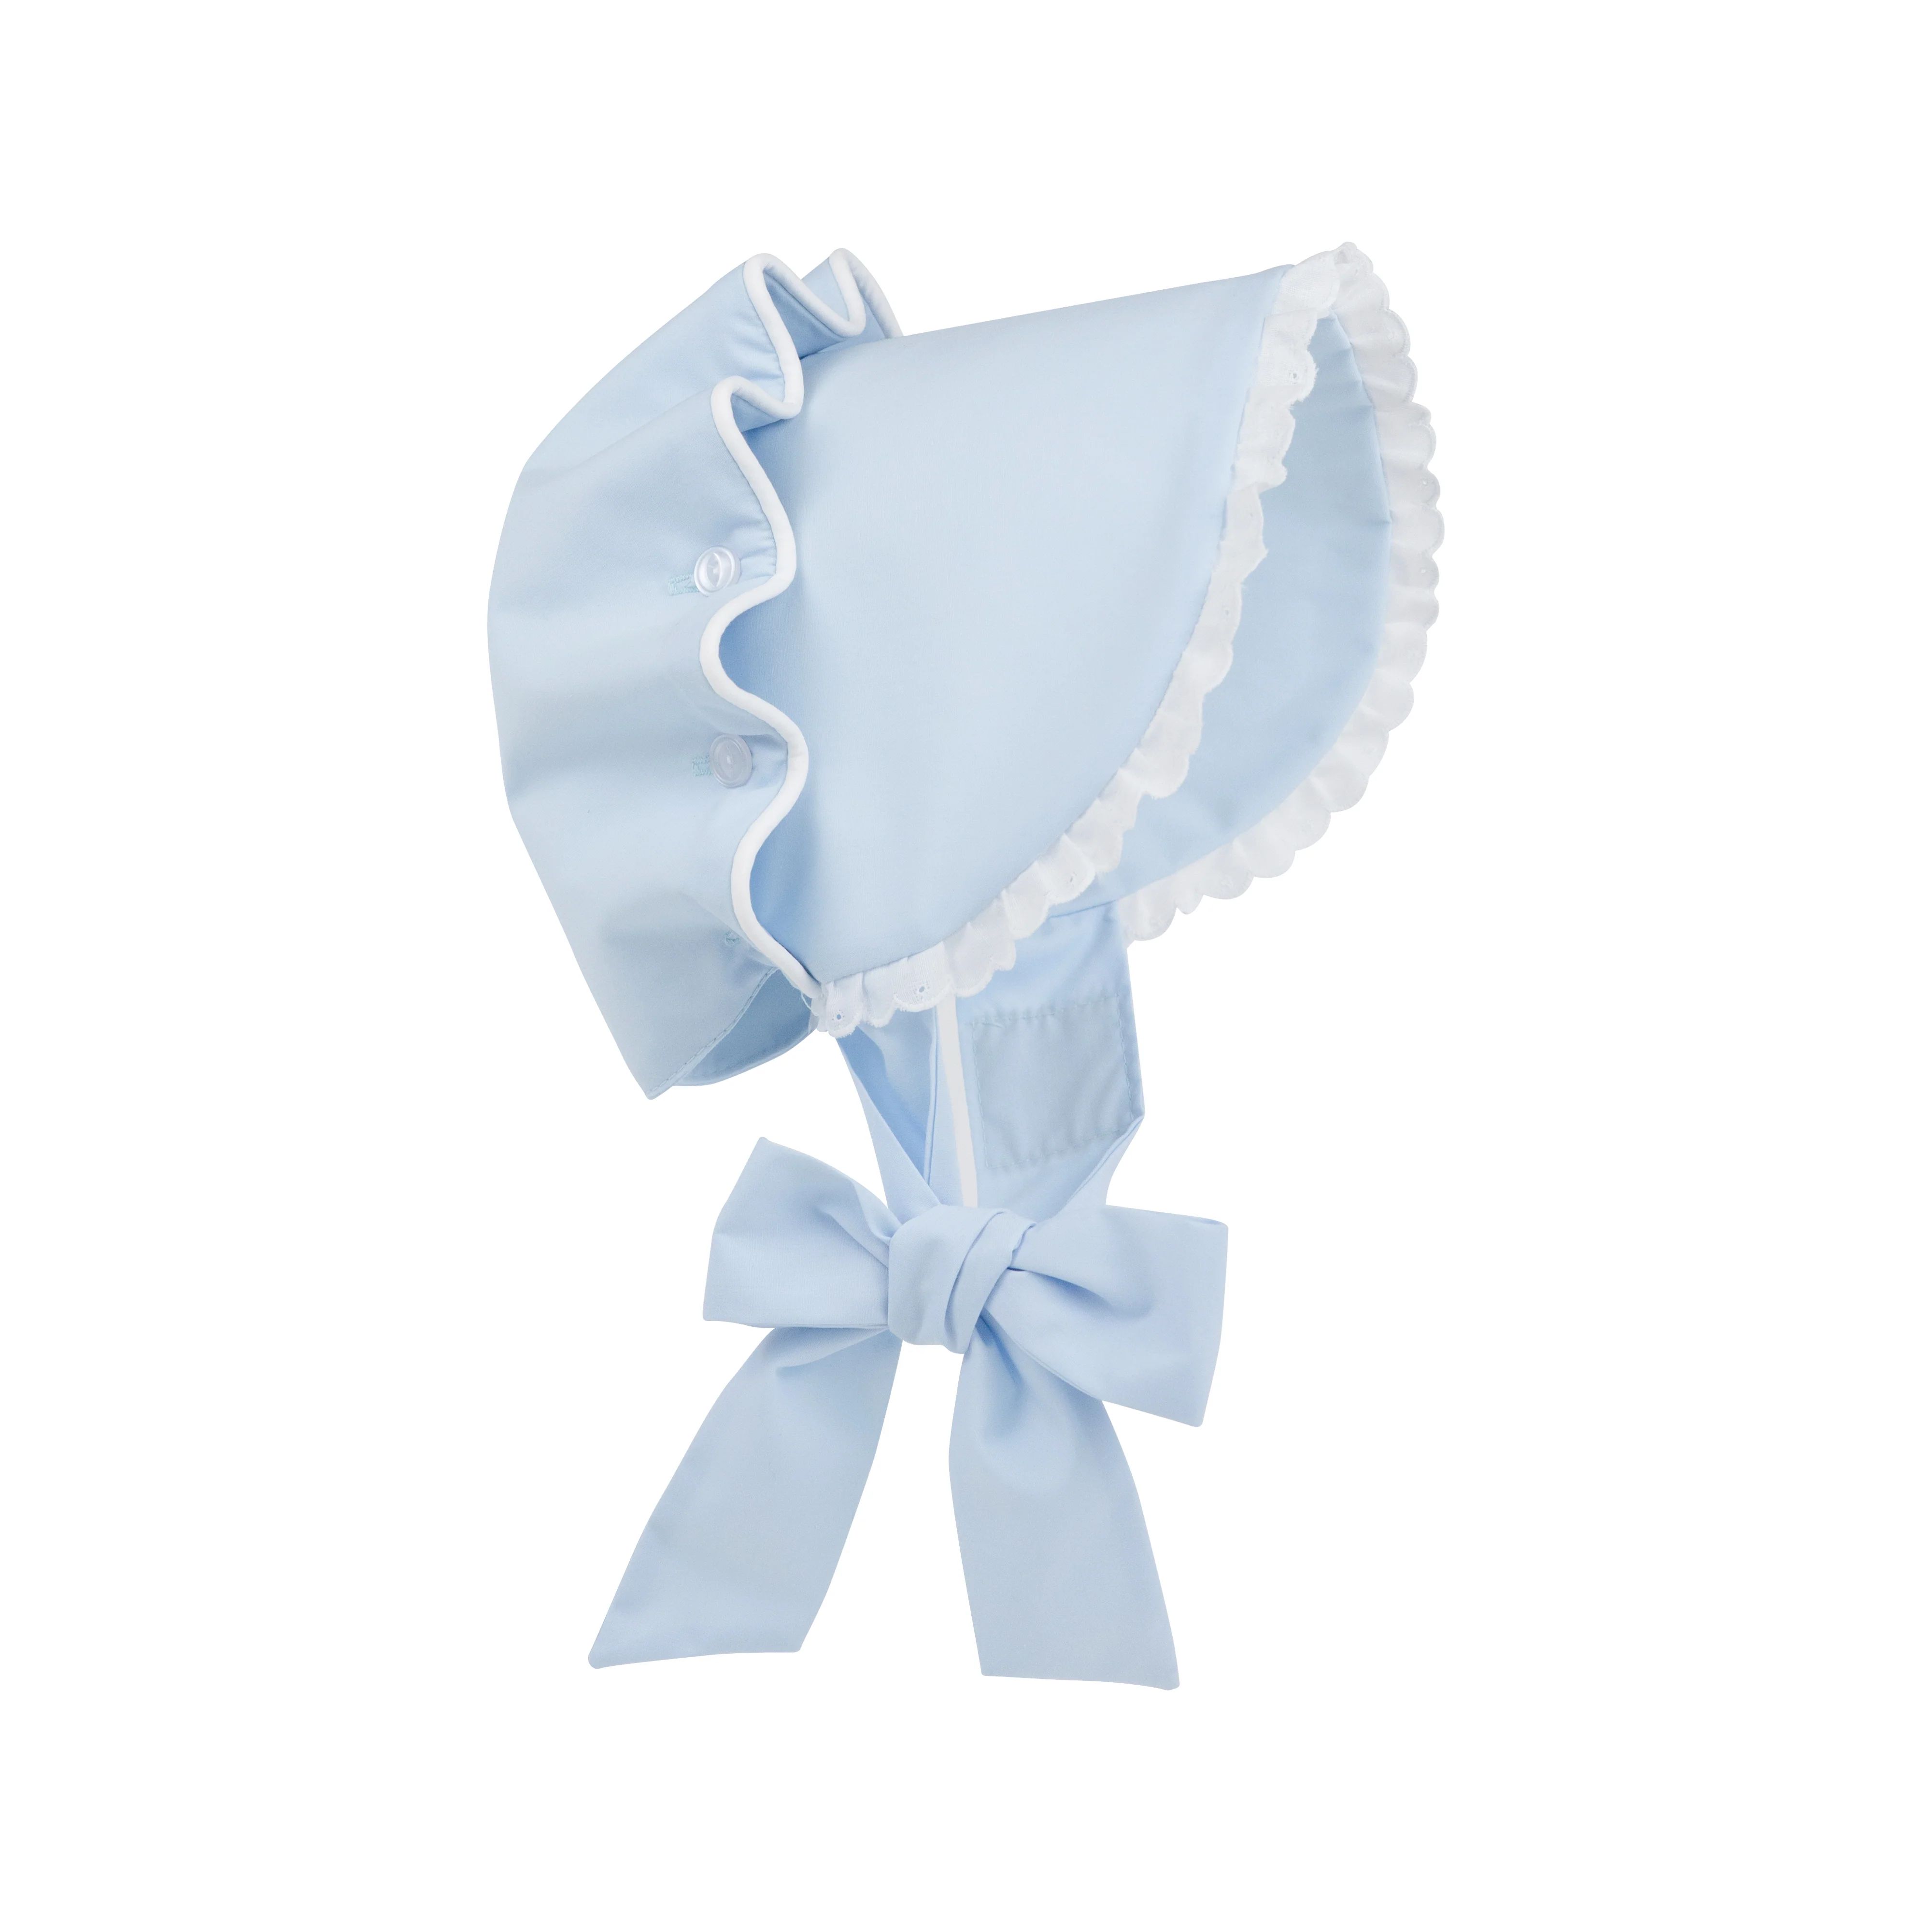 Bellefaire Bonnet - Buckhead Blue with Worth Avenue White Eyelet | The Beaufort Bonnet Company